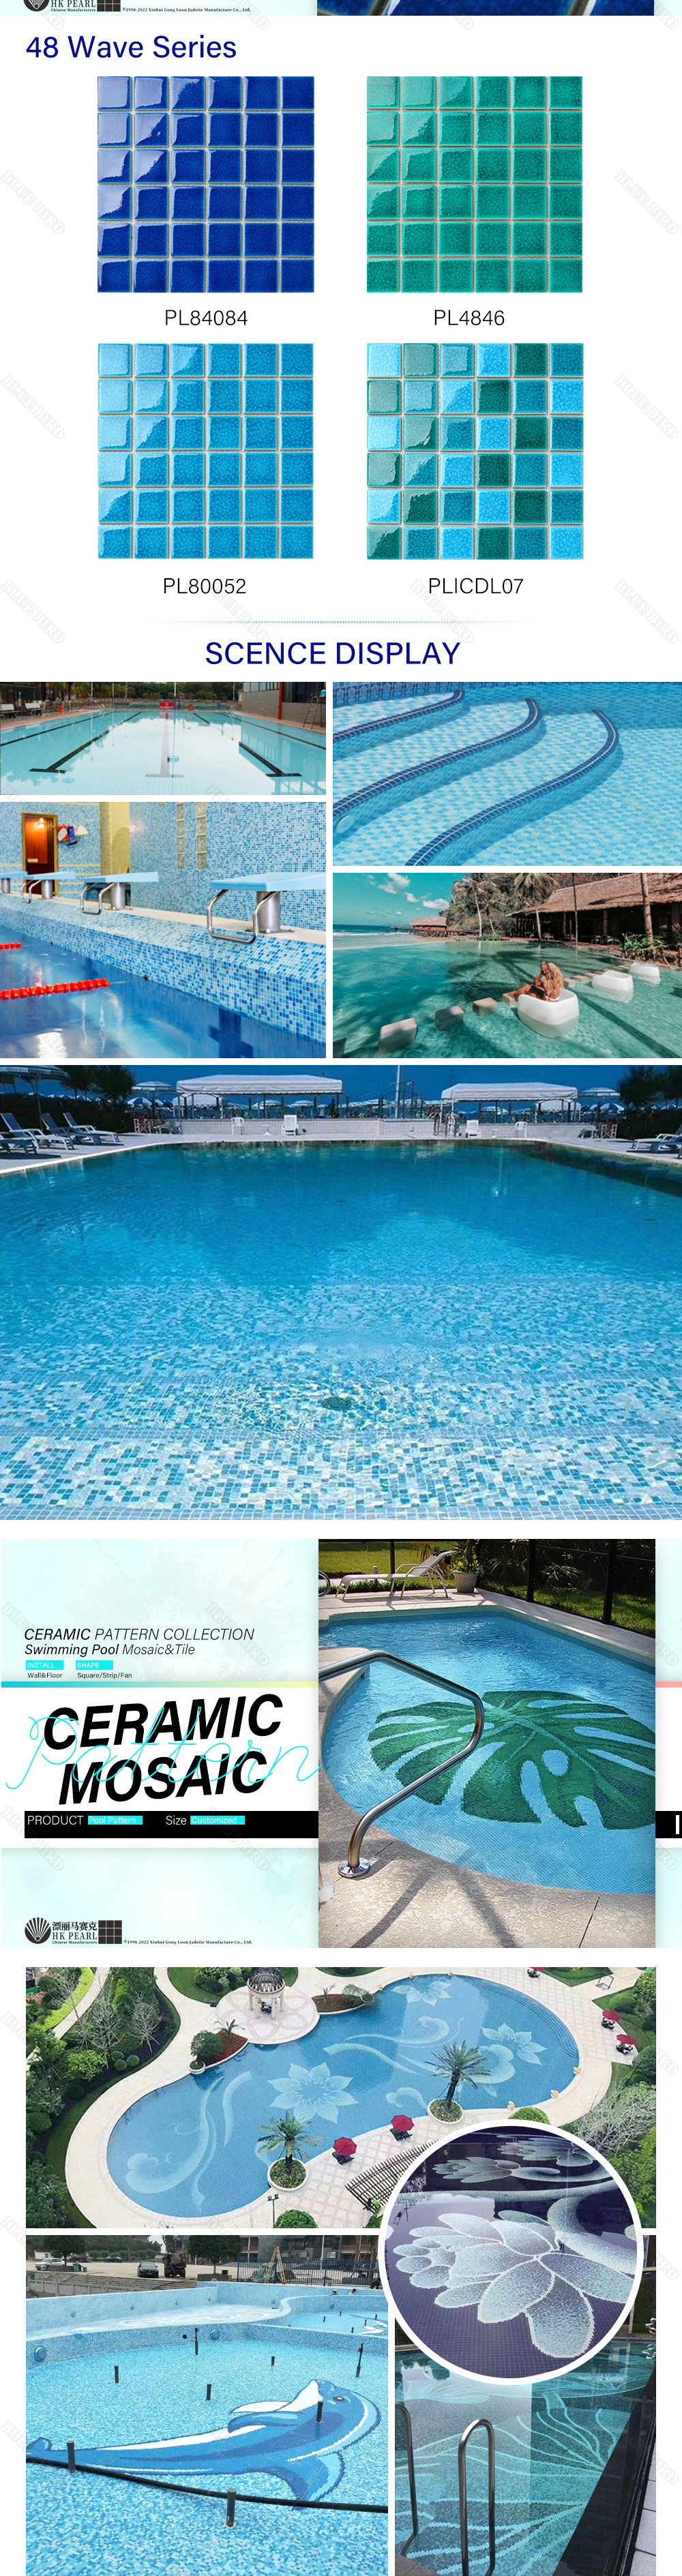 ceramic swimming pool